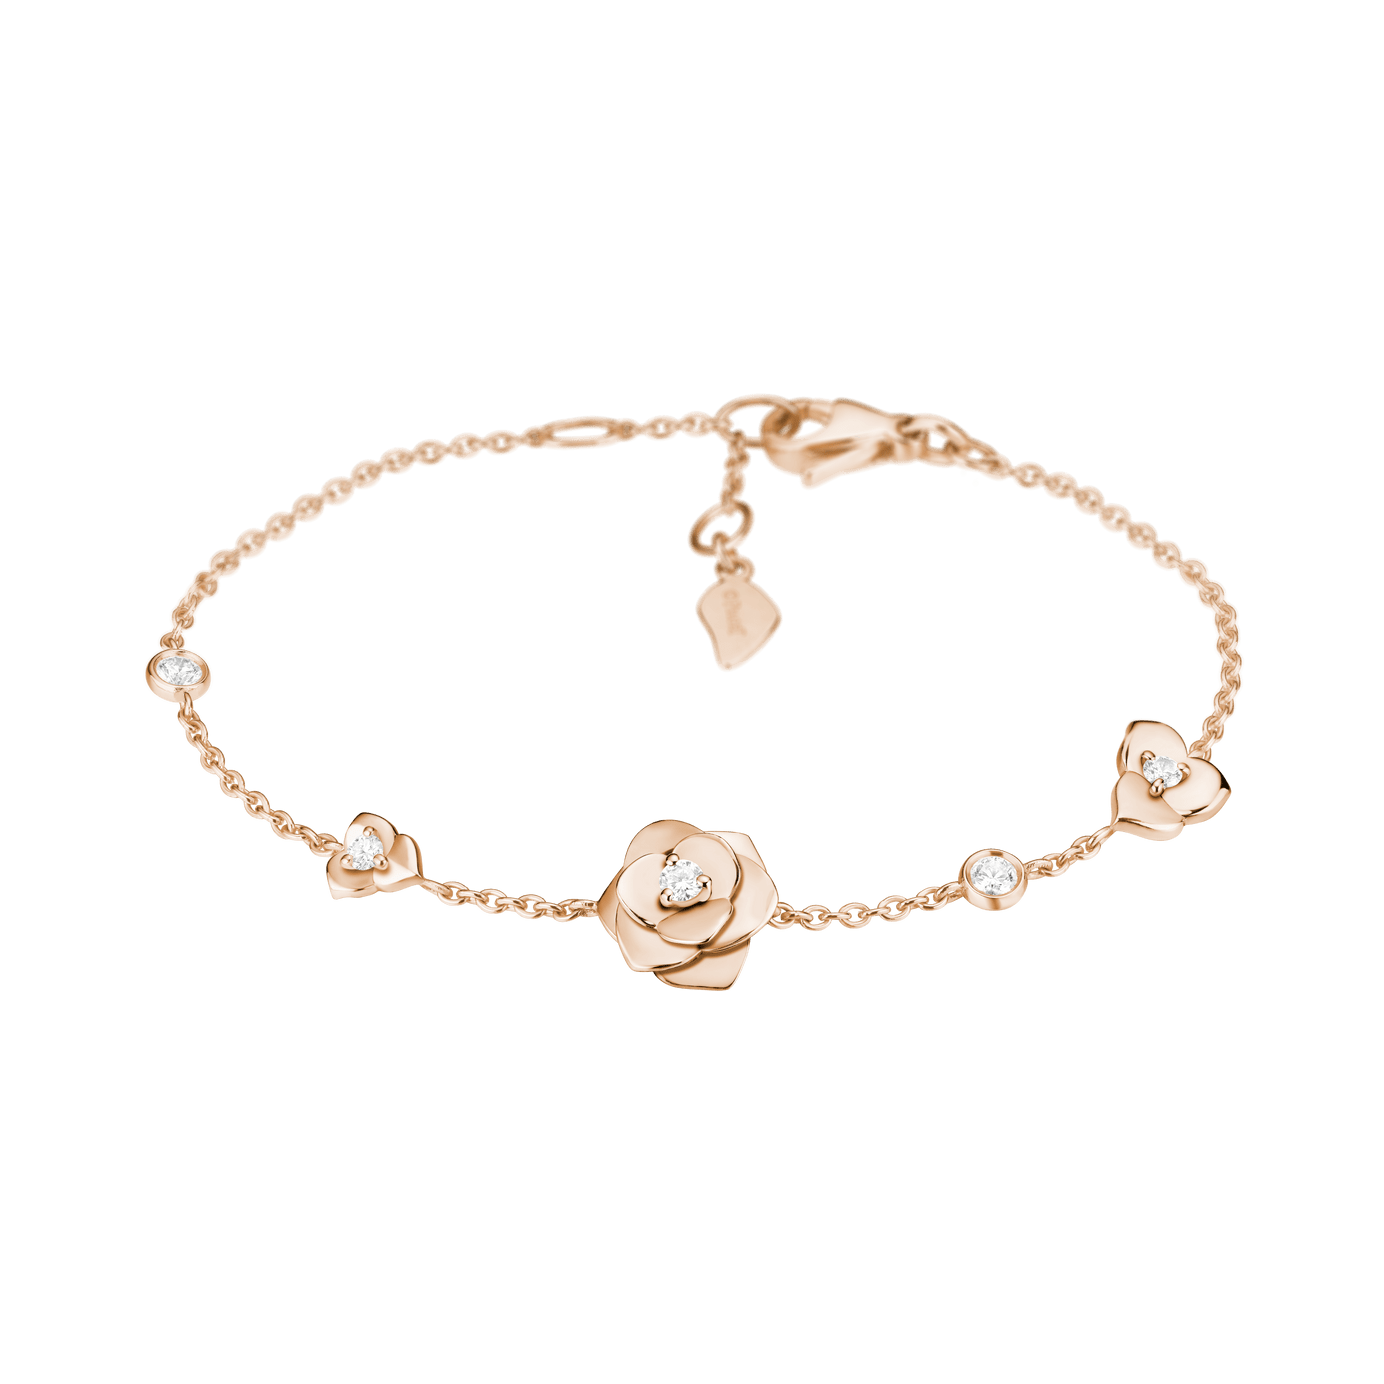 Buy 18KT Rose Gold Floral Bracelet Online | ORRA